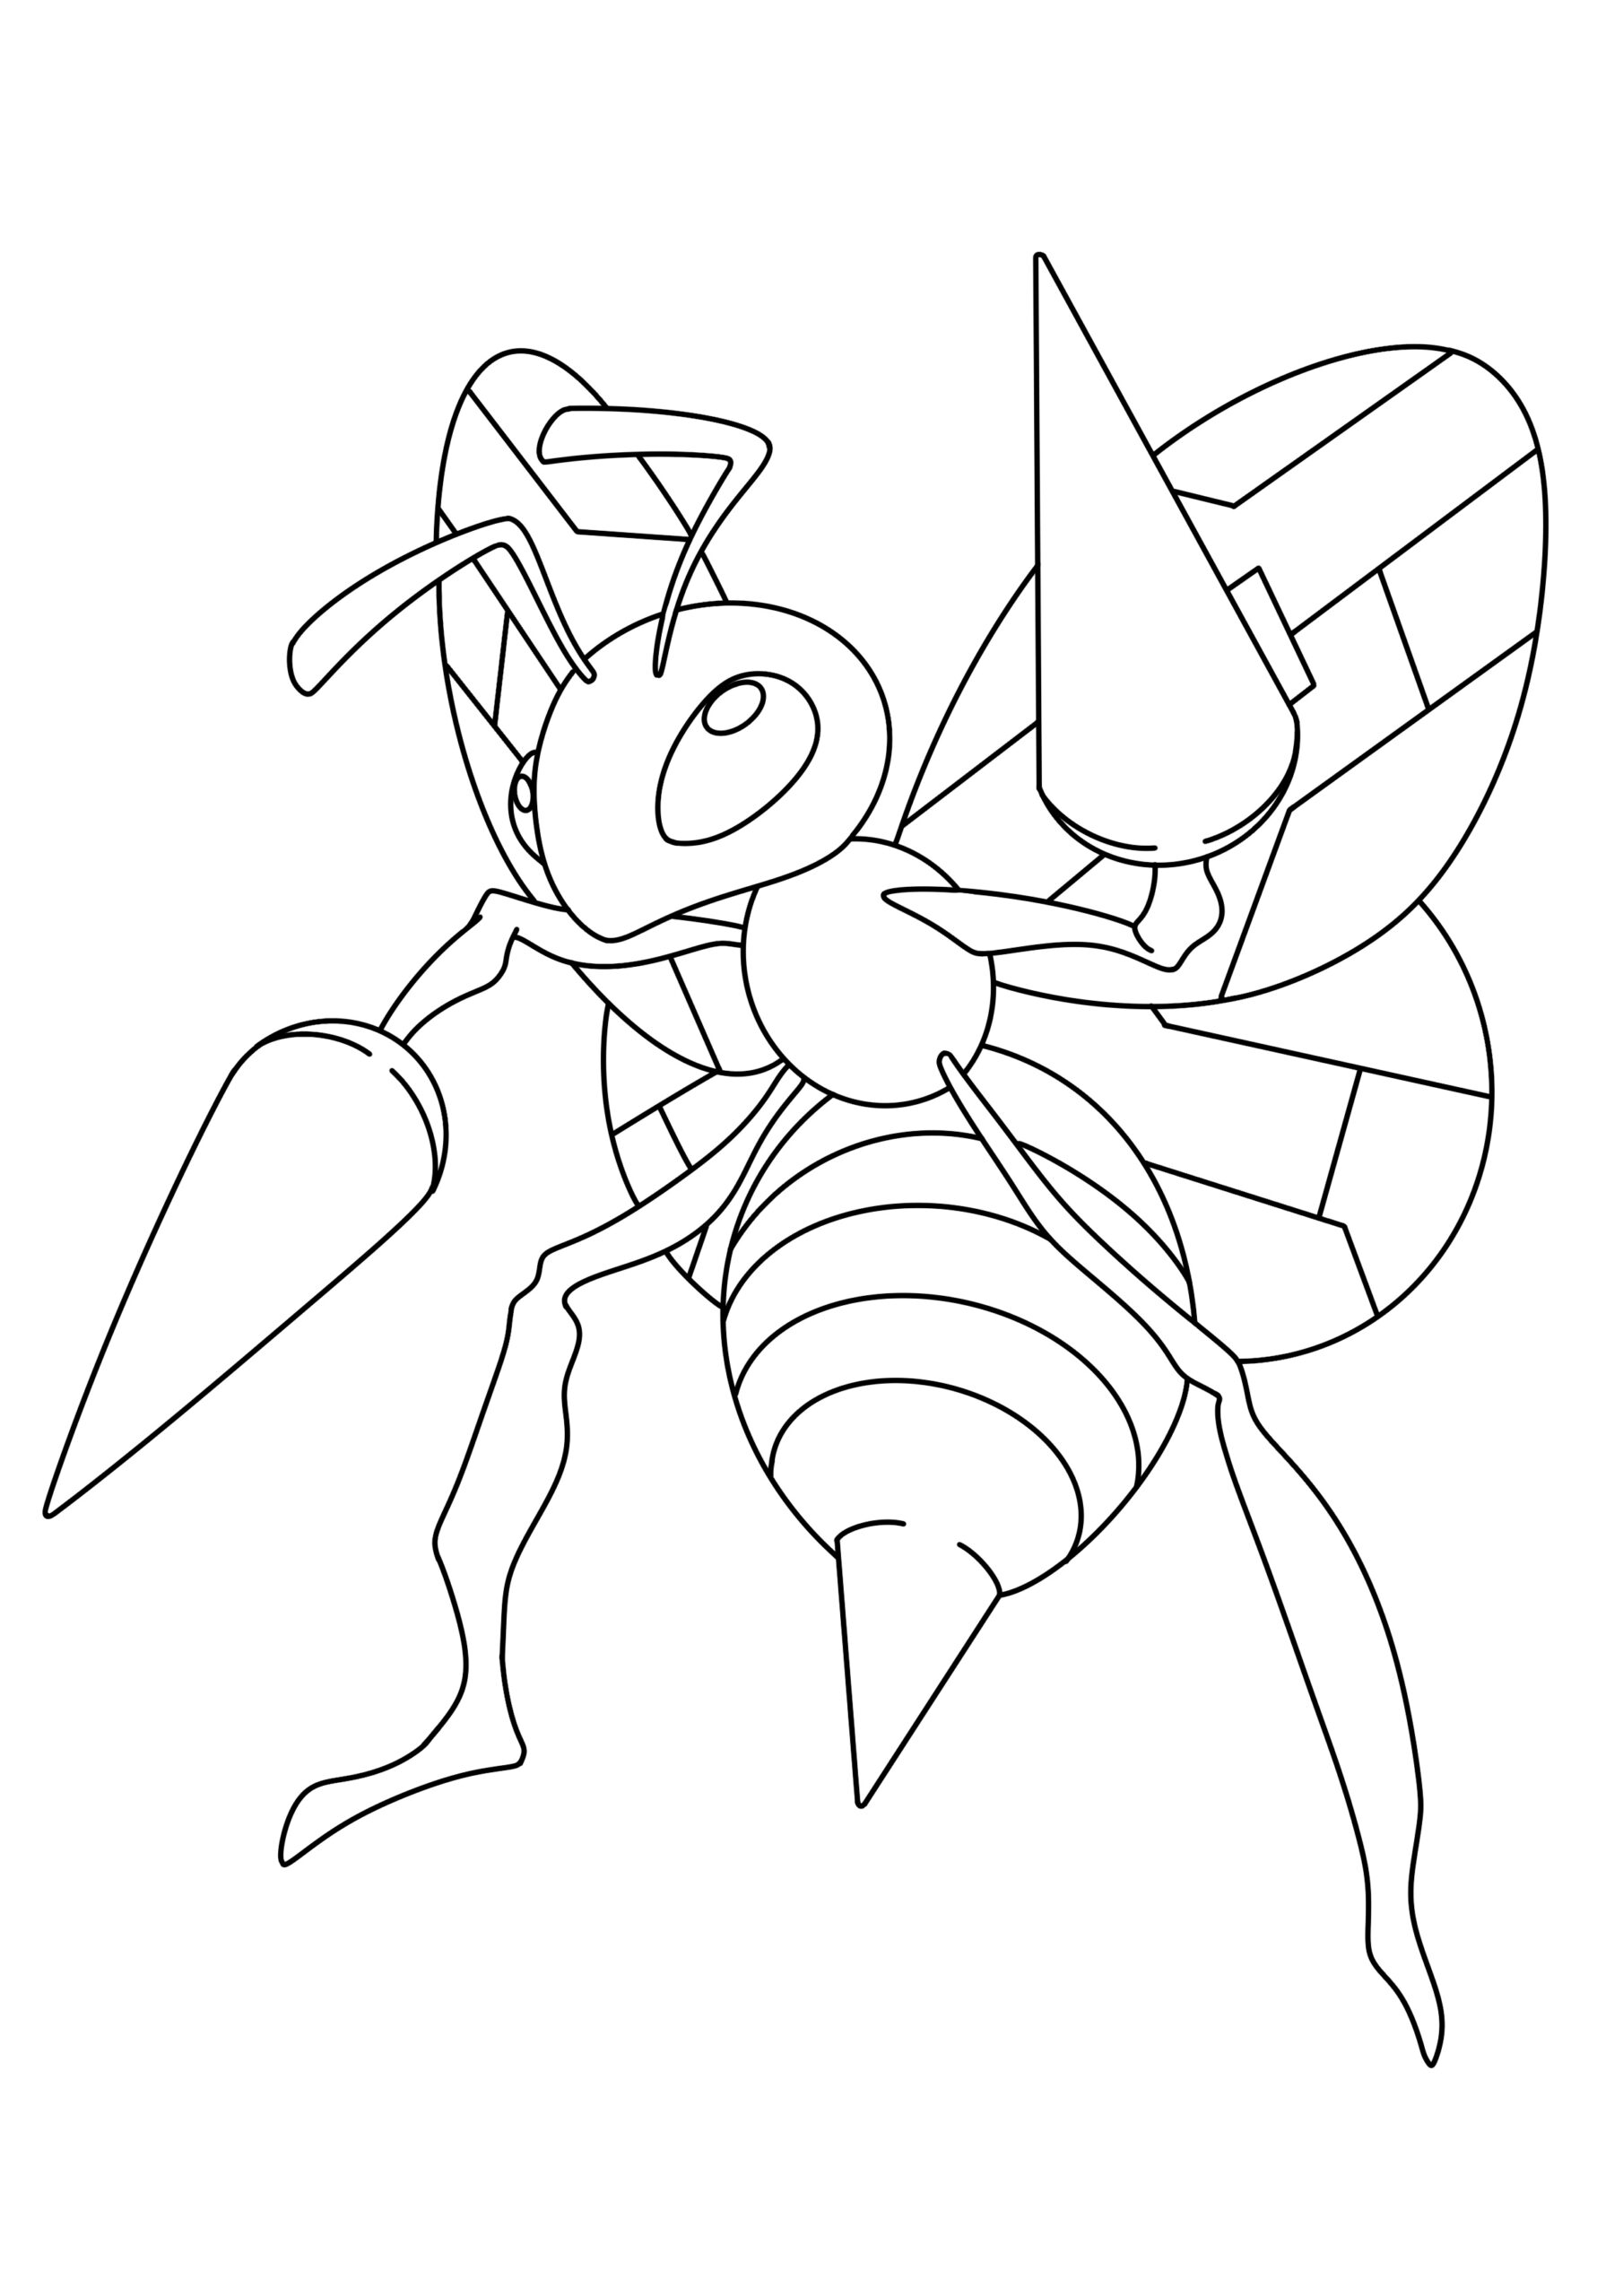 Pokémon-0015 Beedrill